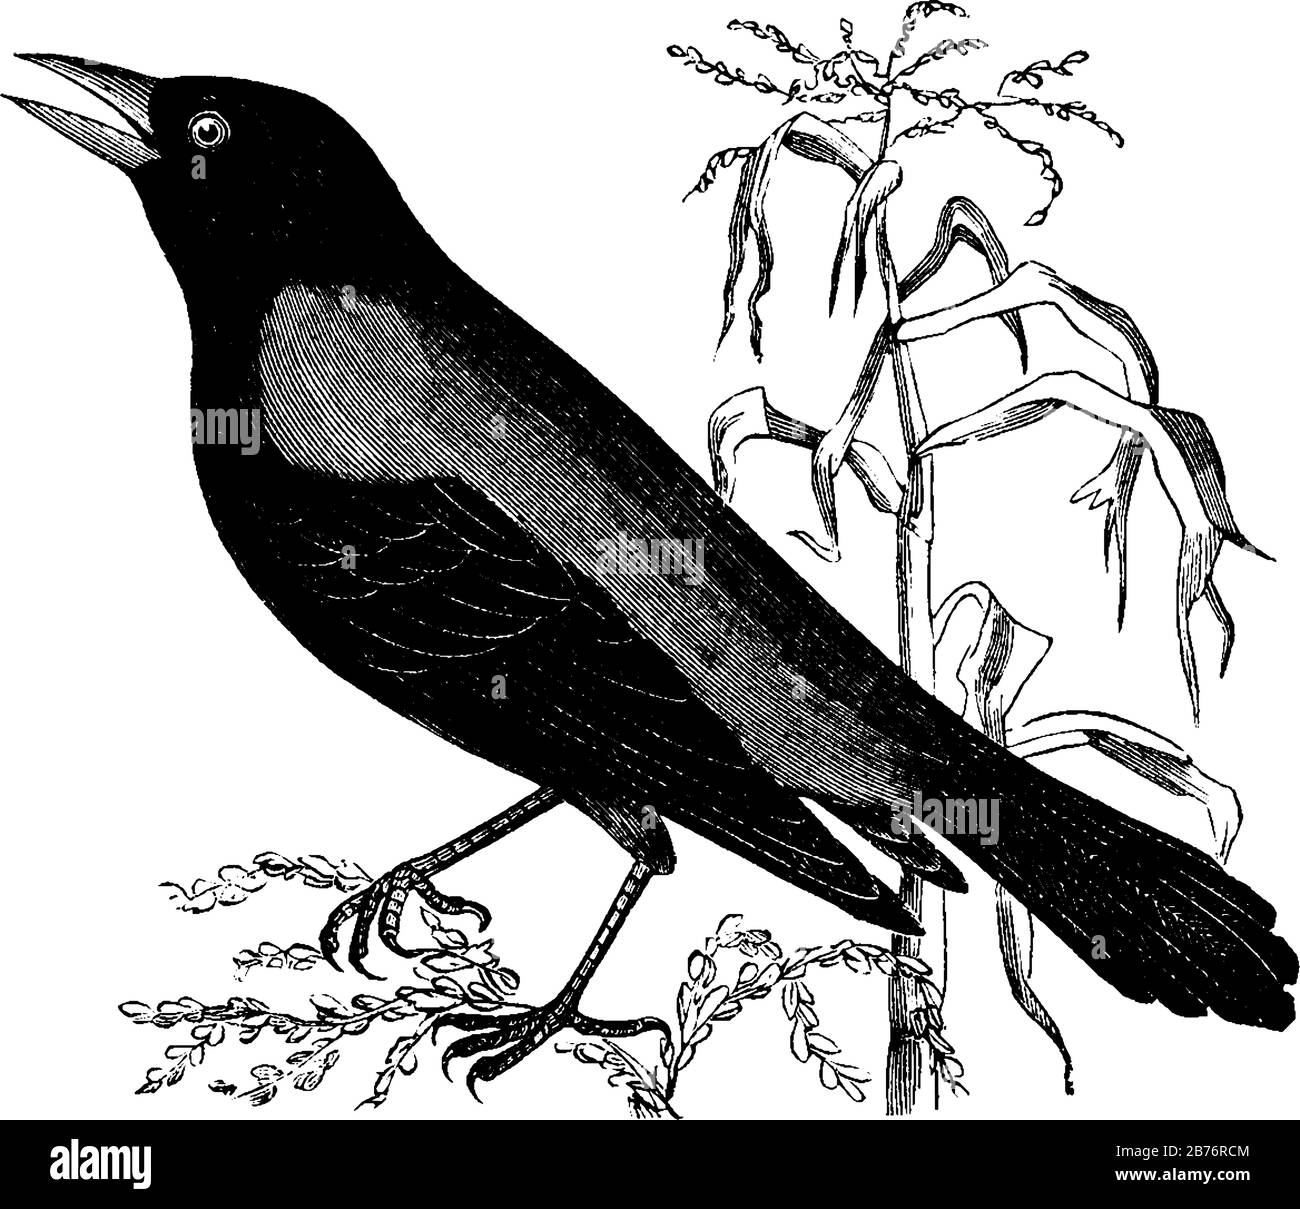 Rusty Crow Blackbird habite beaucoup la même région, le dessin vintage de ligne ou l'illustration de gravure. Illustration de Vecteur